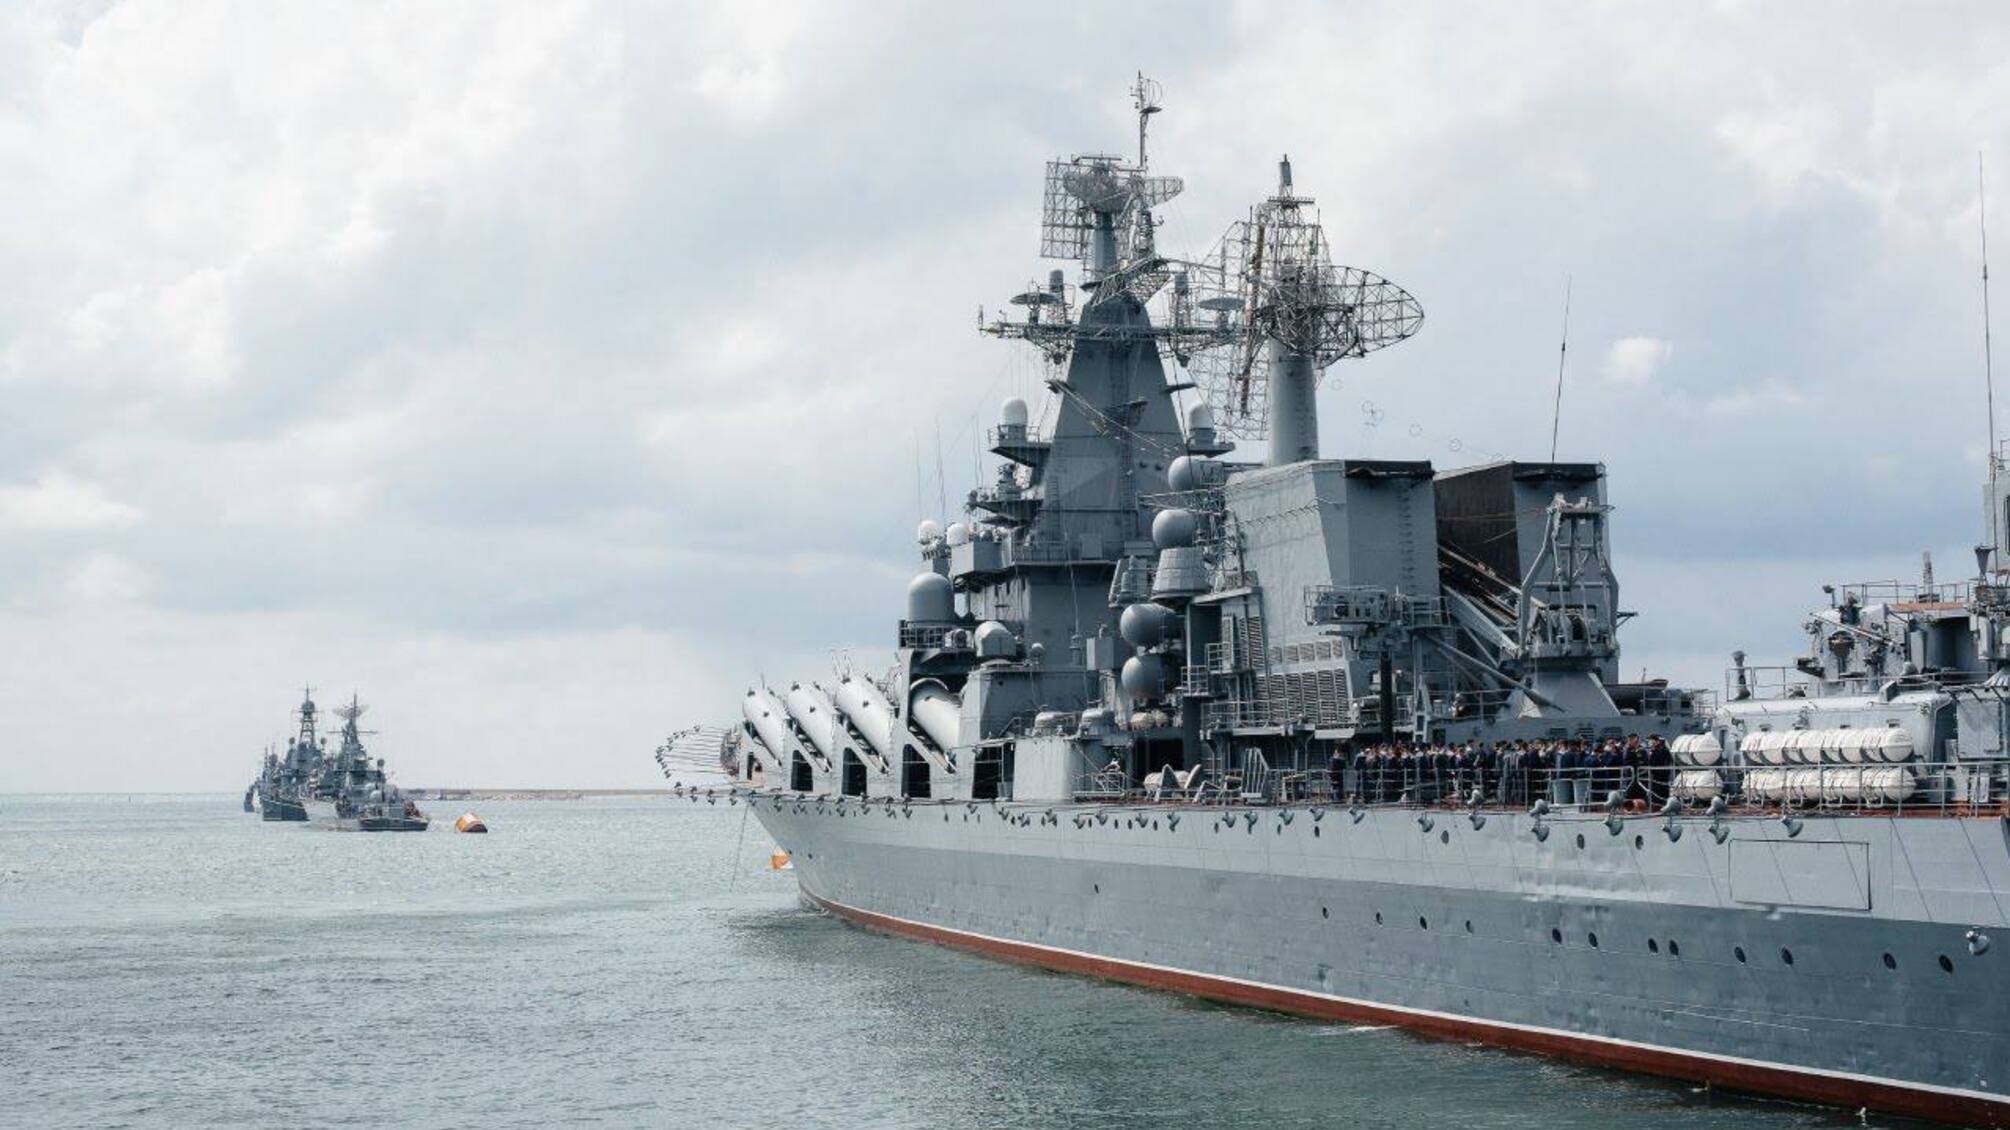 СМИ сообщают, что в Крыму возможно затонул один российский корабль